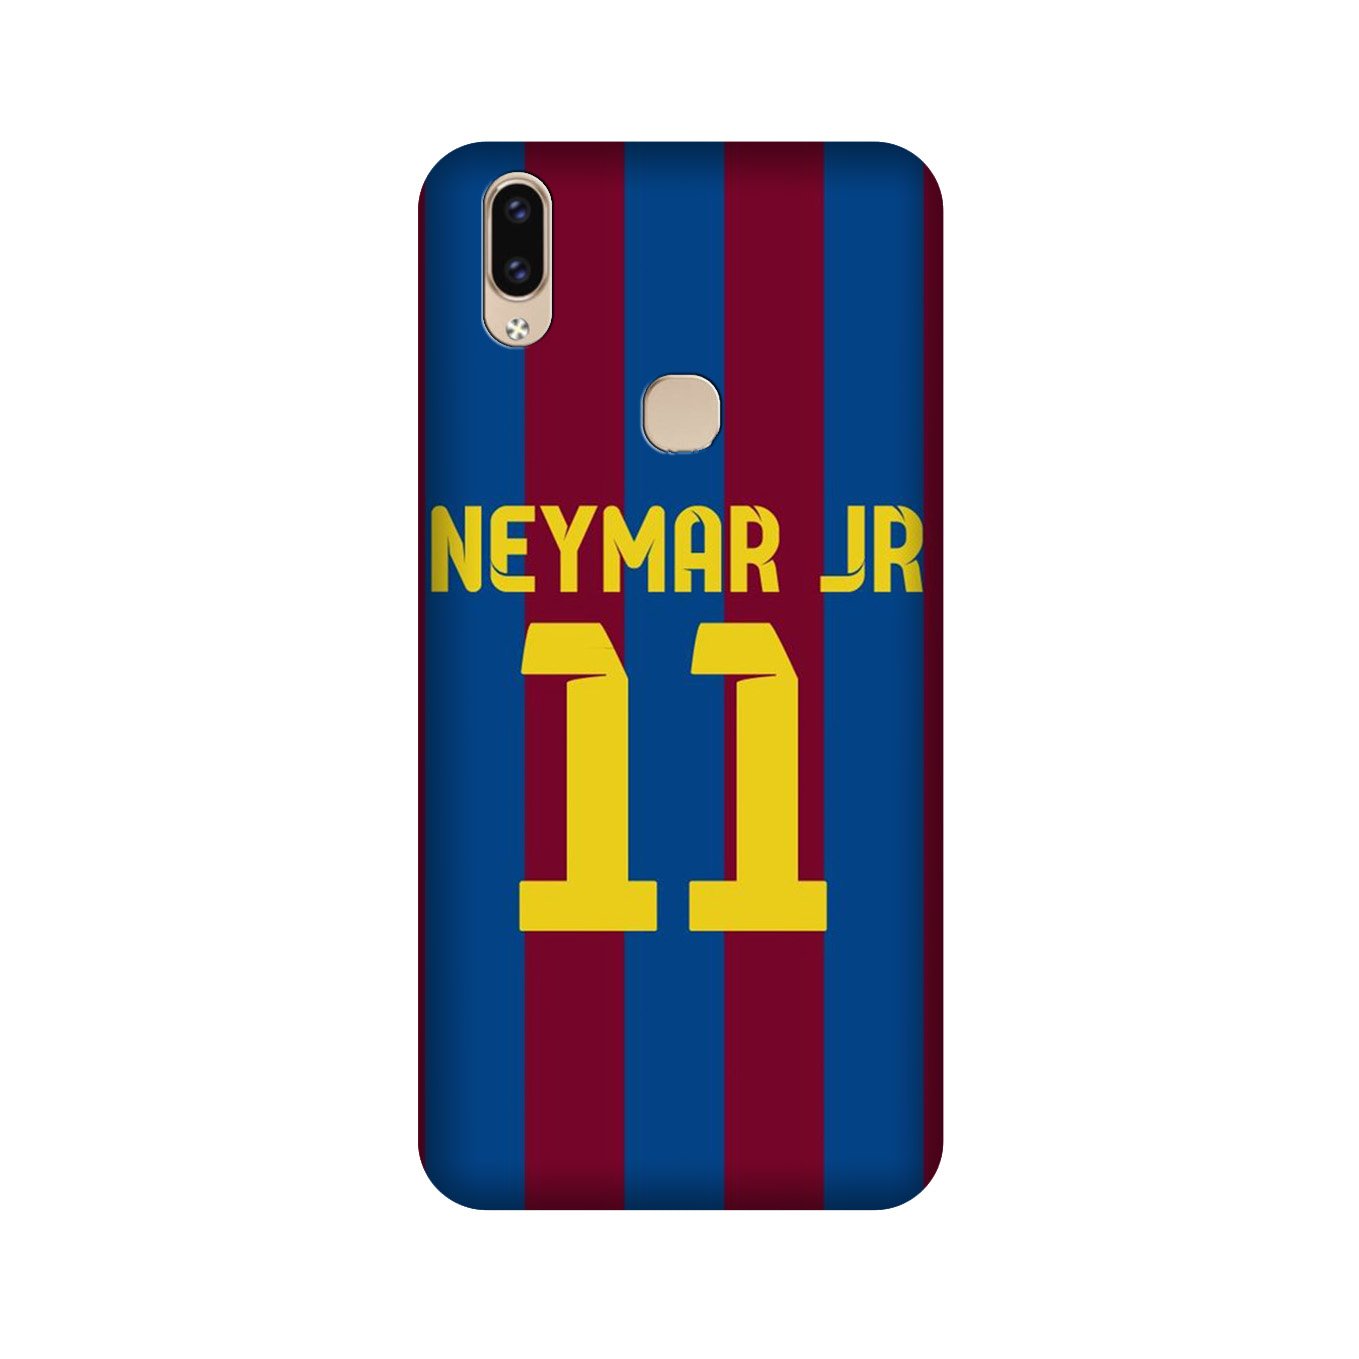 Neymar Jr Case for Vivo V9 pro(Design - 162)